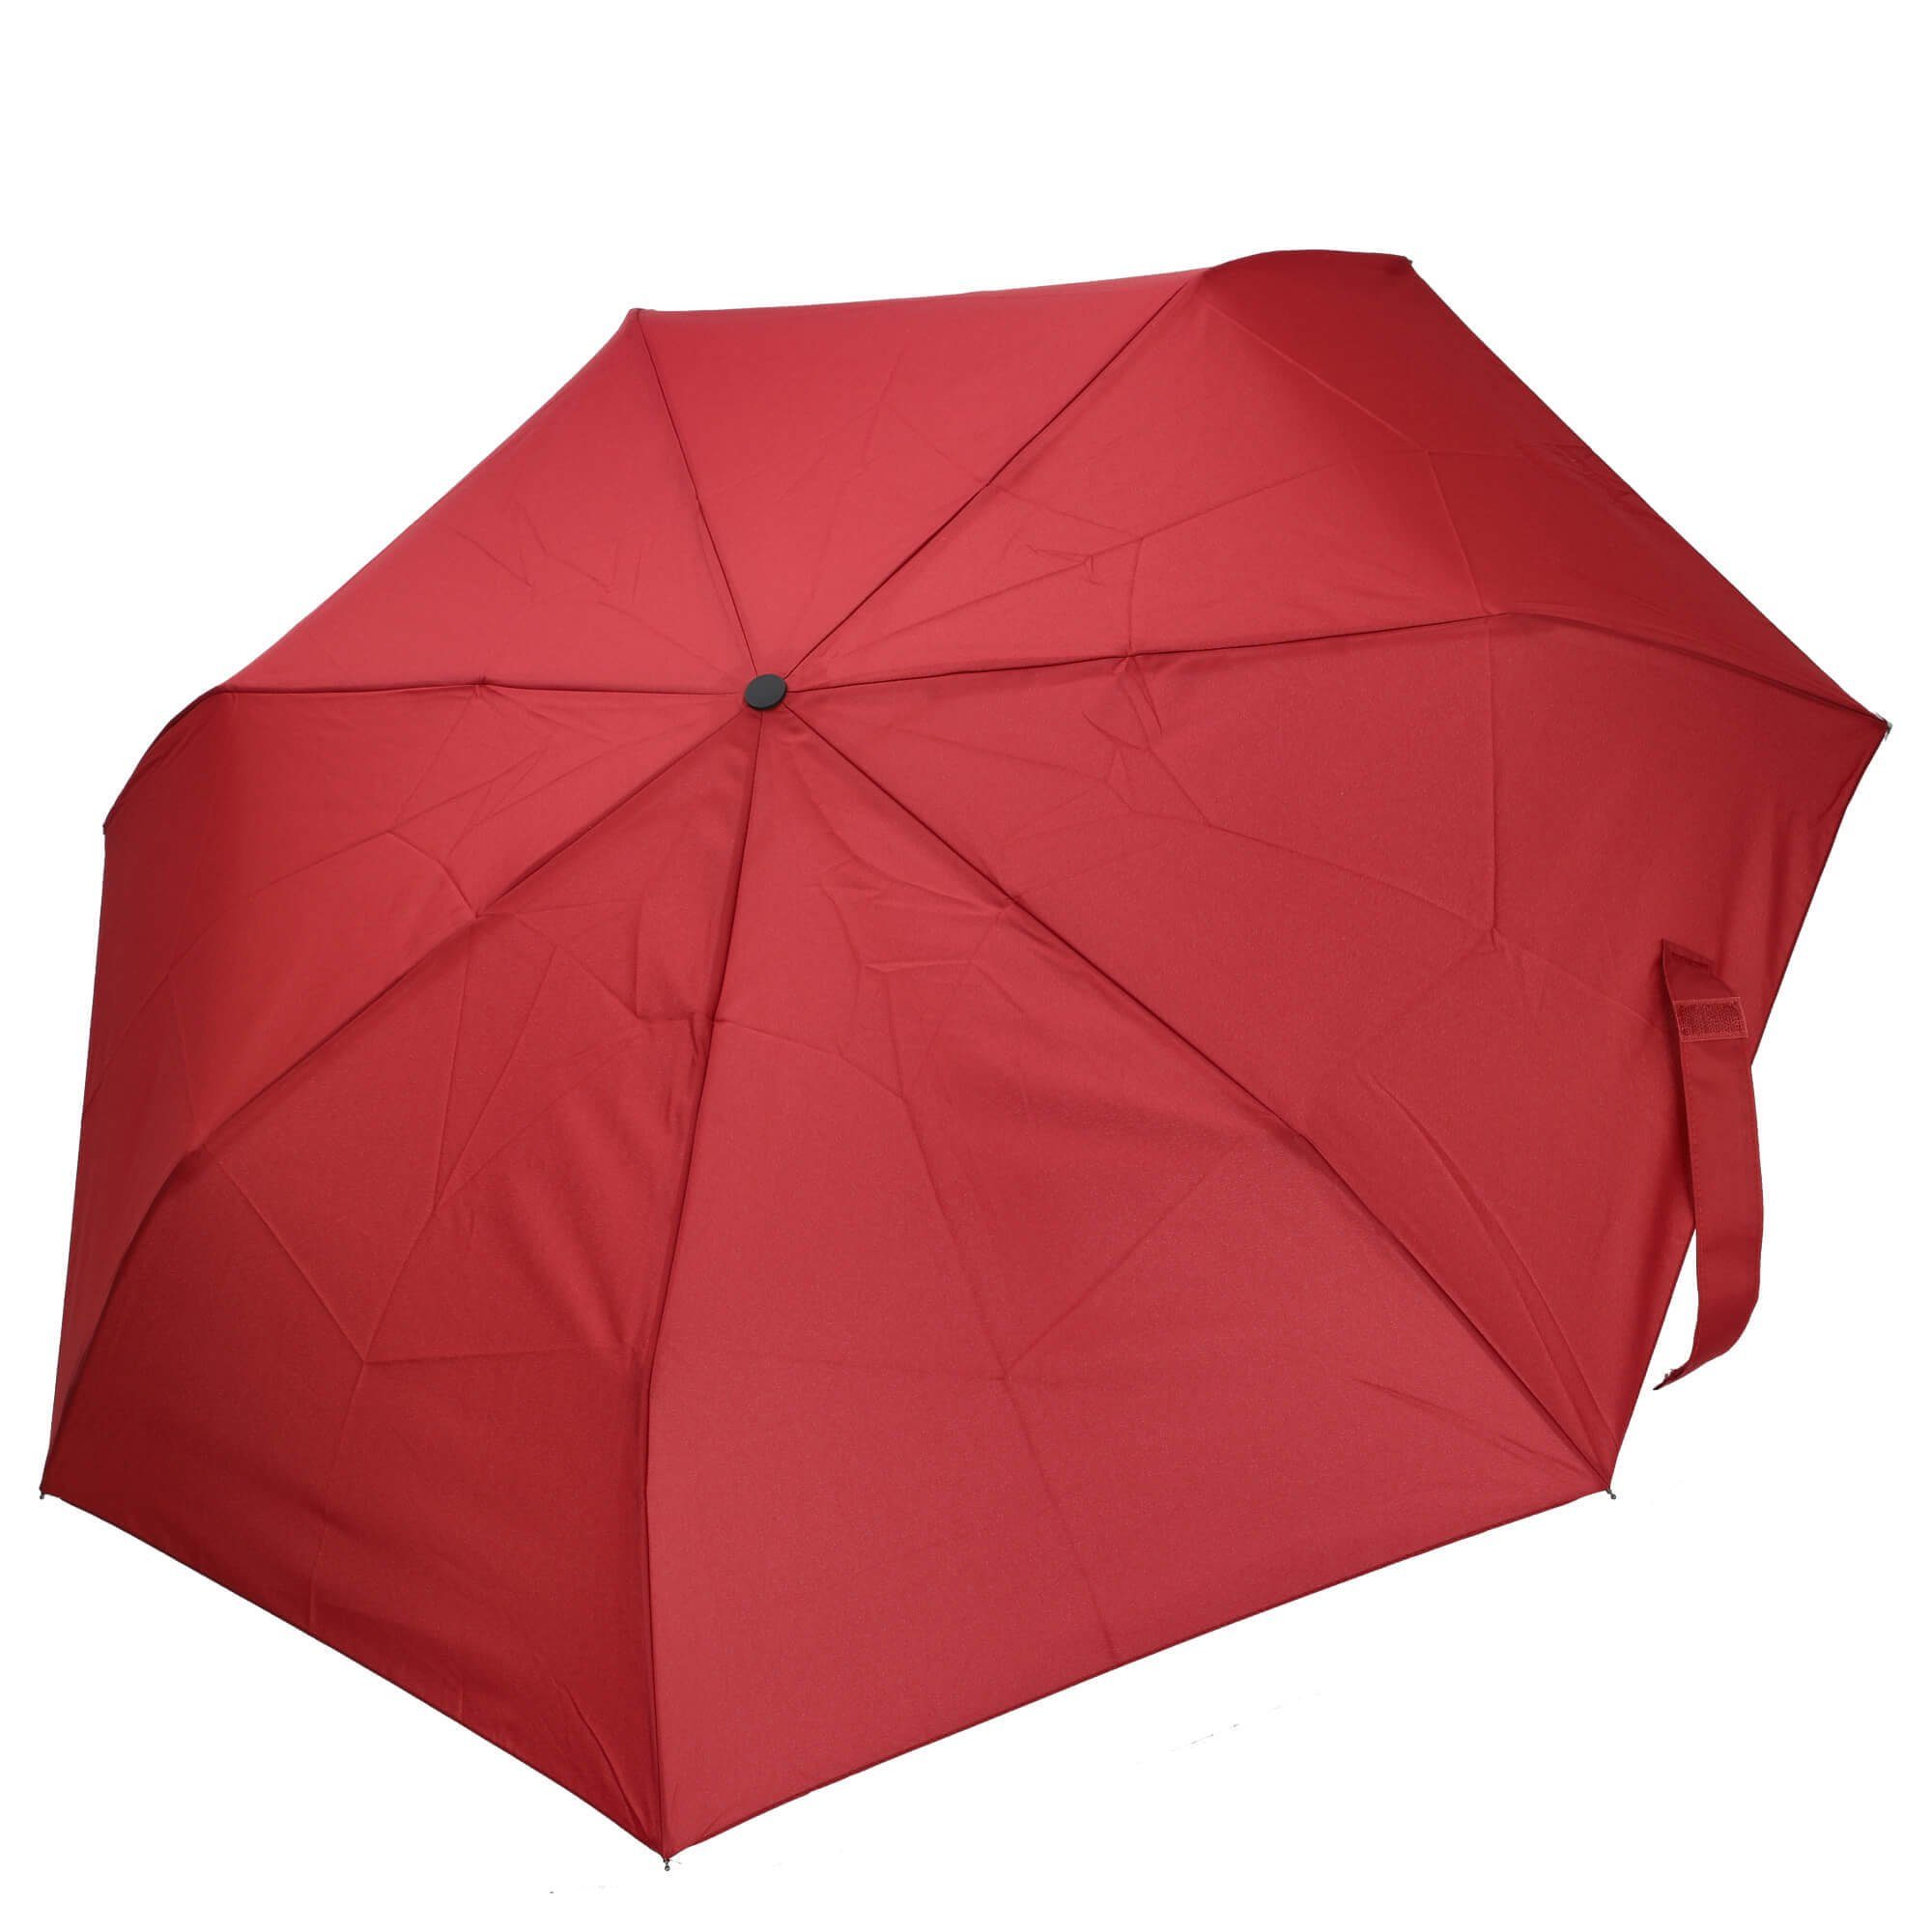 THE BRIDGE Taschenregenschirm - rosso 96 cm Ombrelli Regenschirm